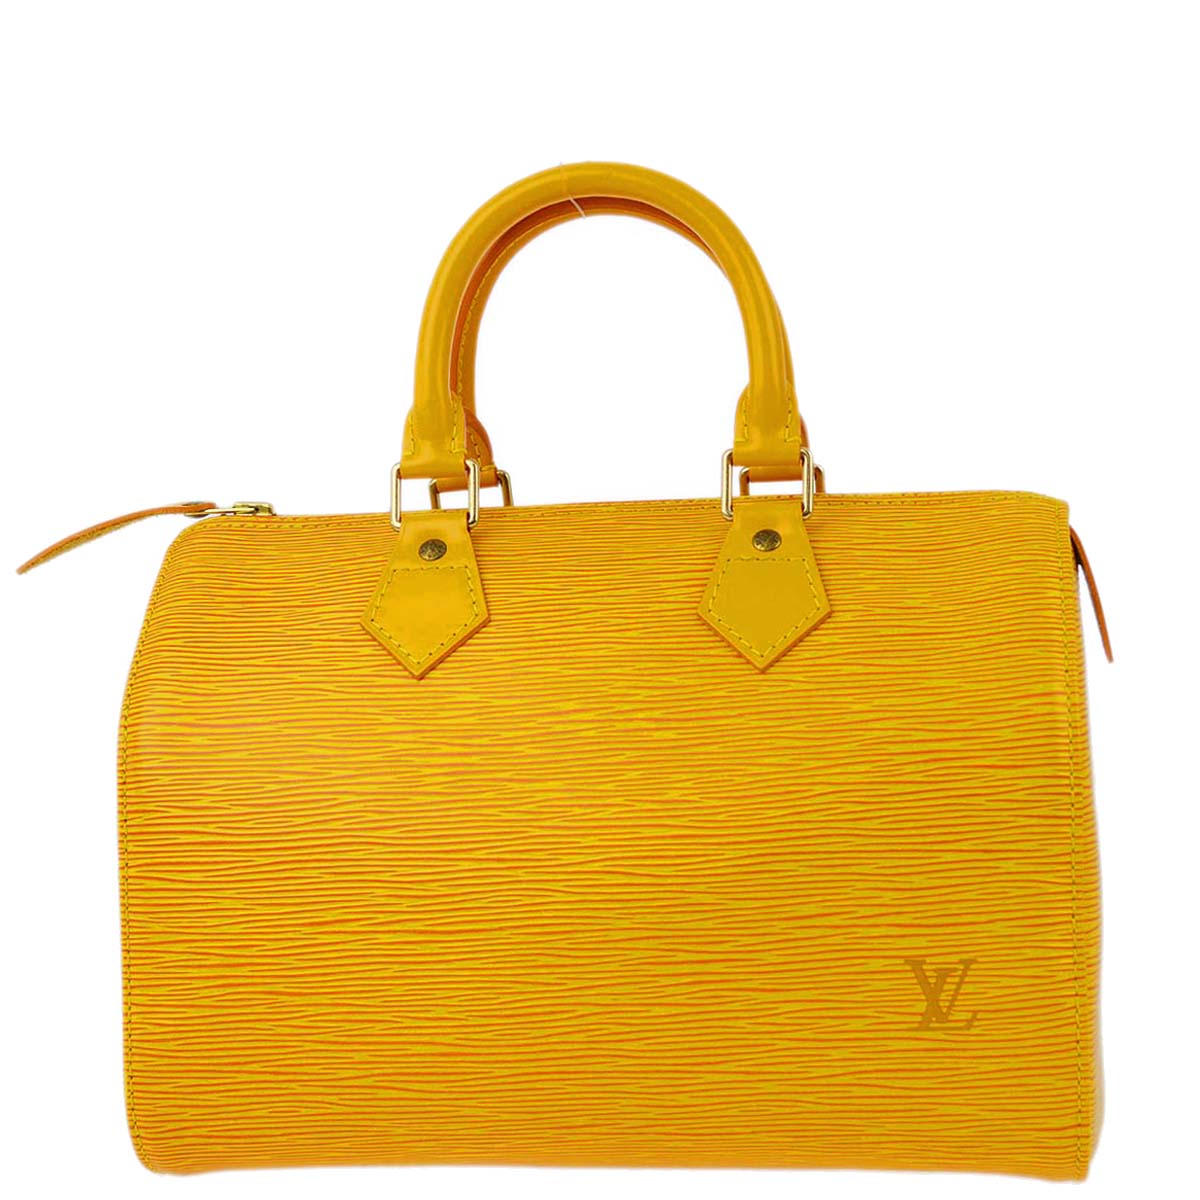 Louis Vuitton 1996 黃色 Epi Speedy 25 手提包 M43019